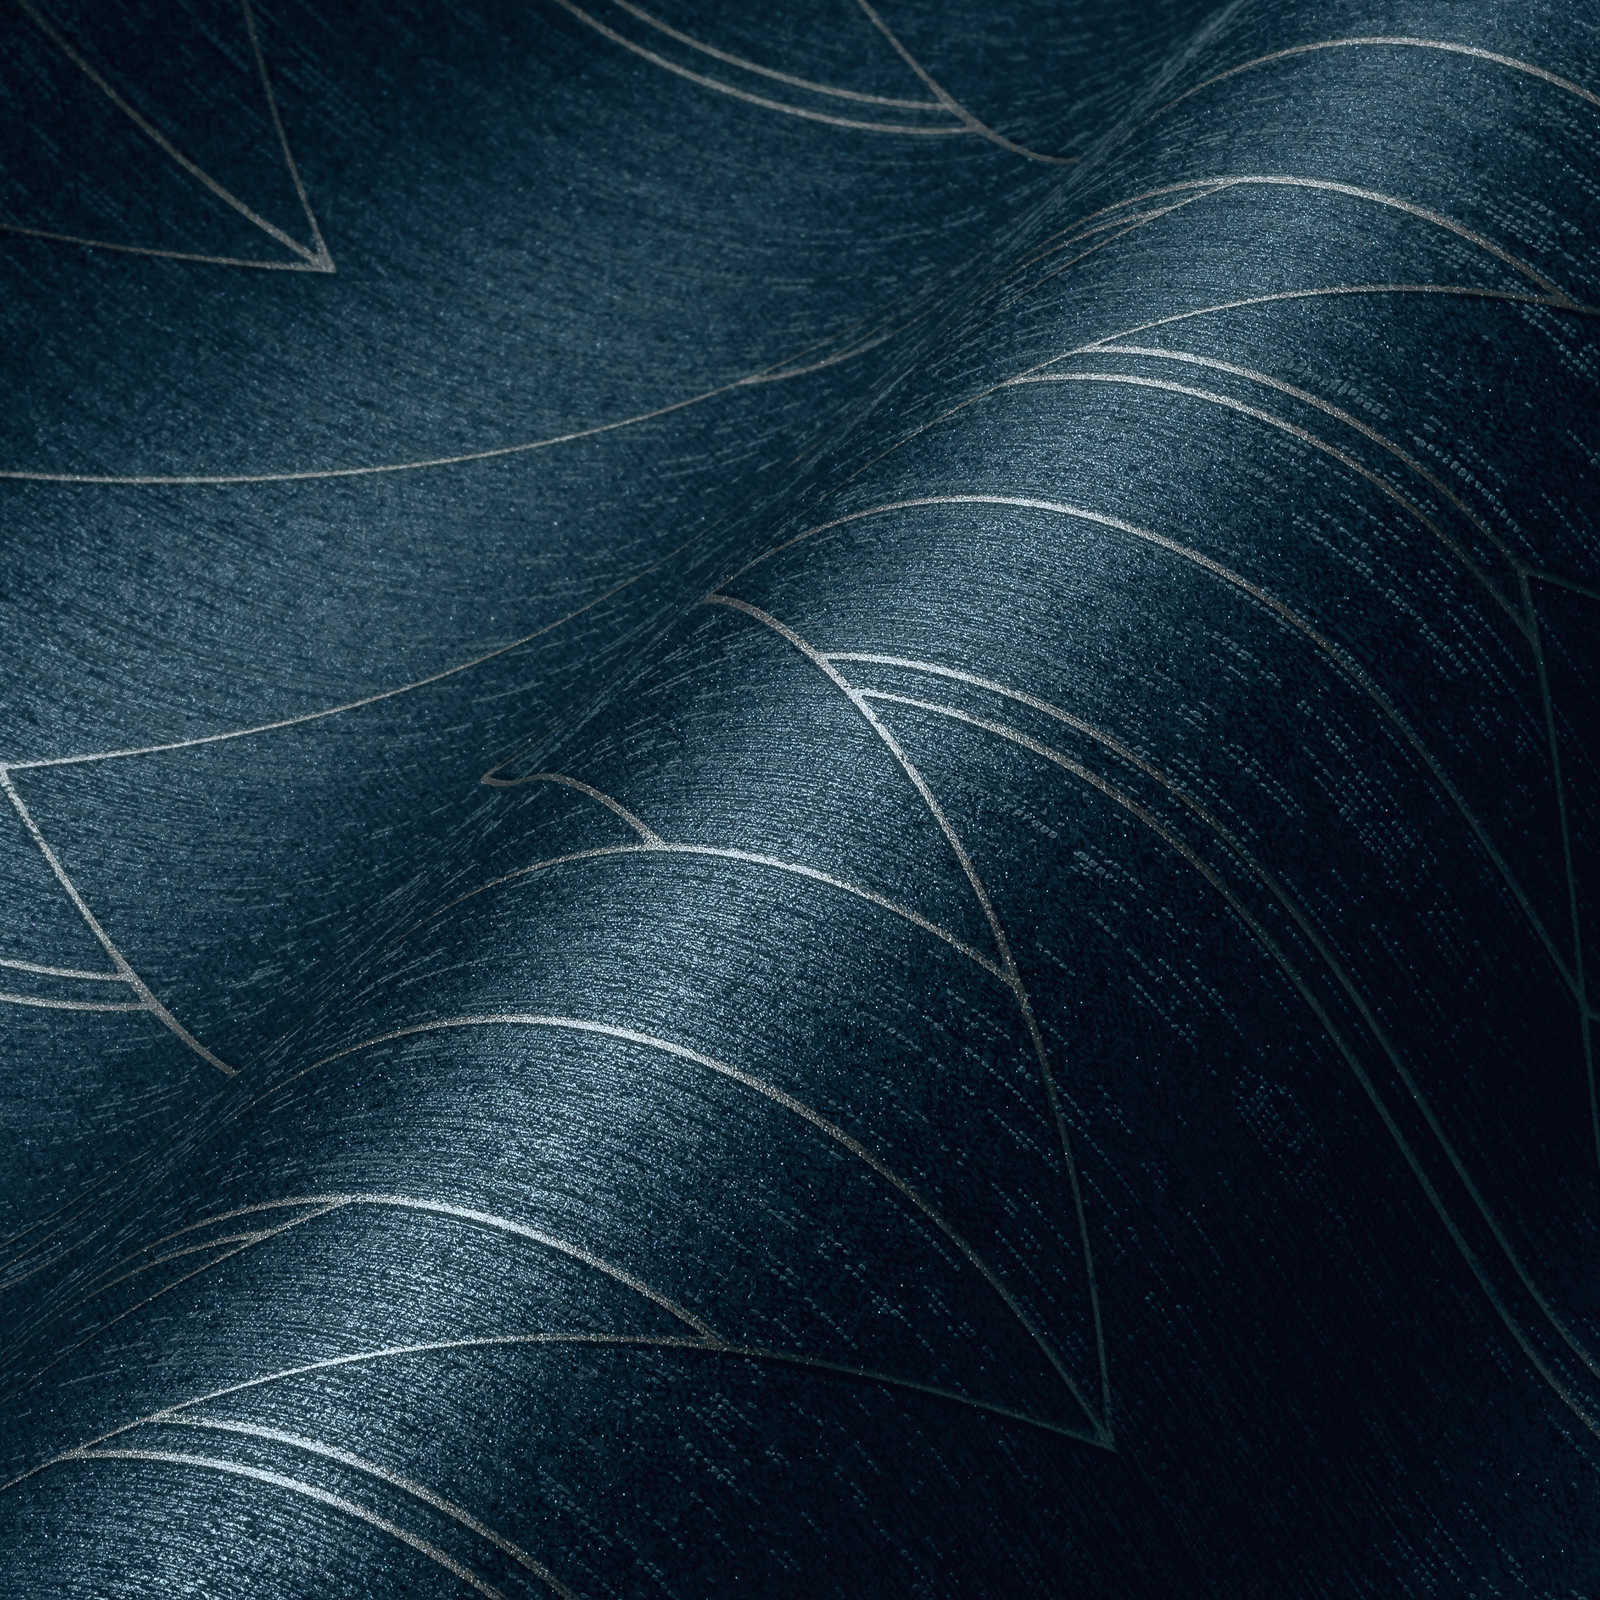             Carta da parati blu scuro con motivo grafico argentato ed effetto lucido - Blu, Metallizzato
        